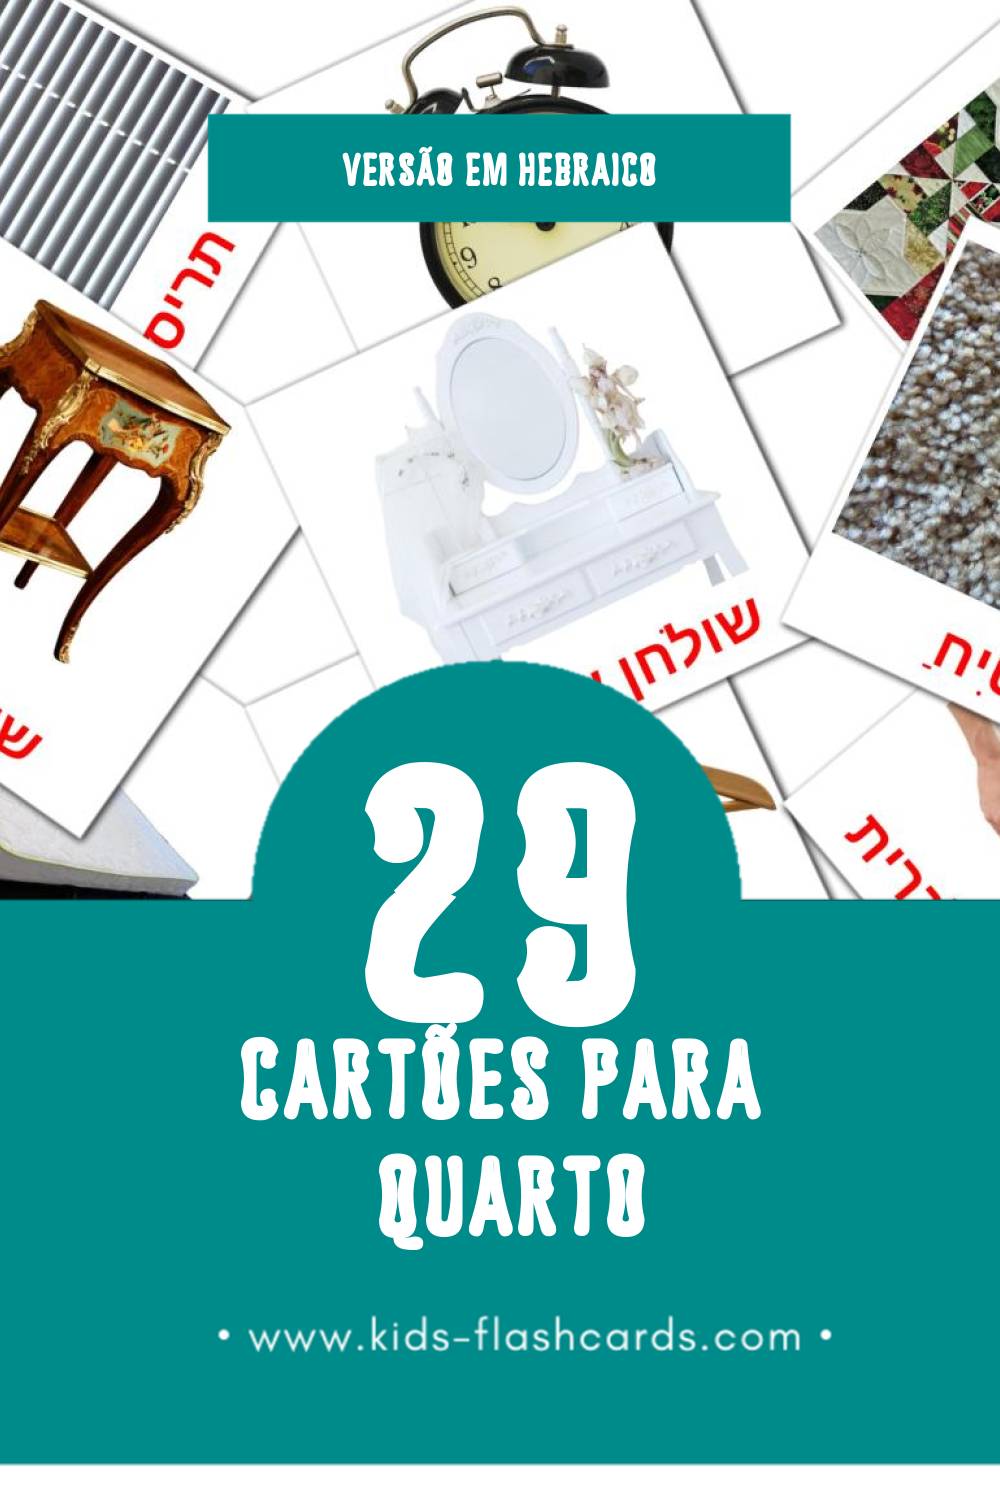 Flashcards de חדר שינה Visuais para Toddlers (29 cartões em Hebraico)